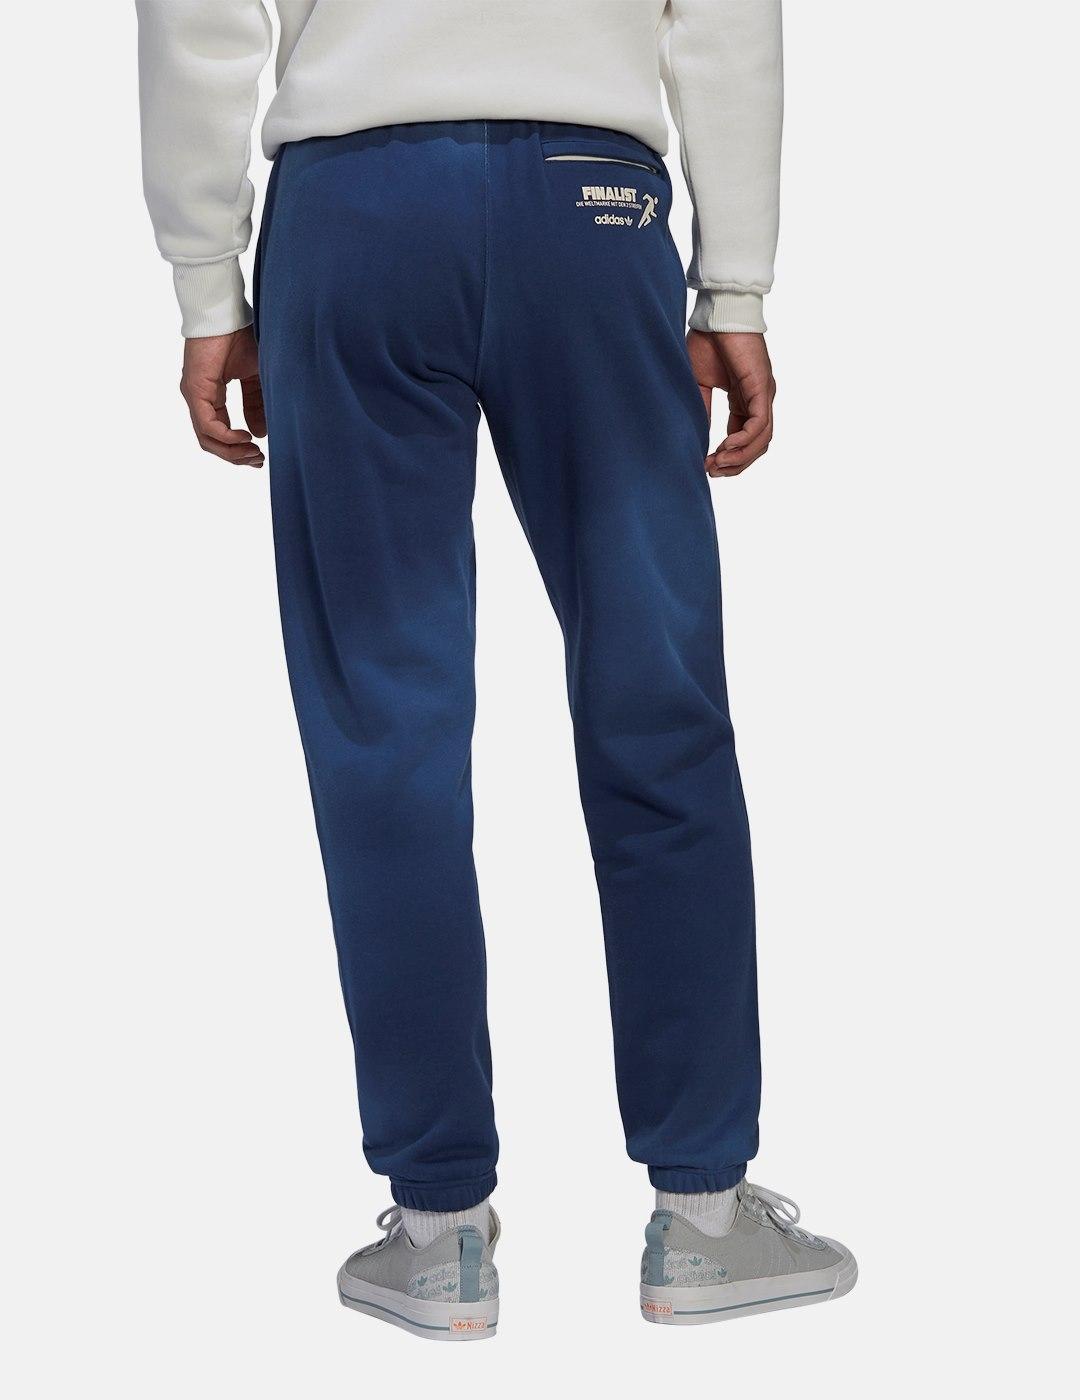 Pantalones adidas Mrc Azul